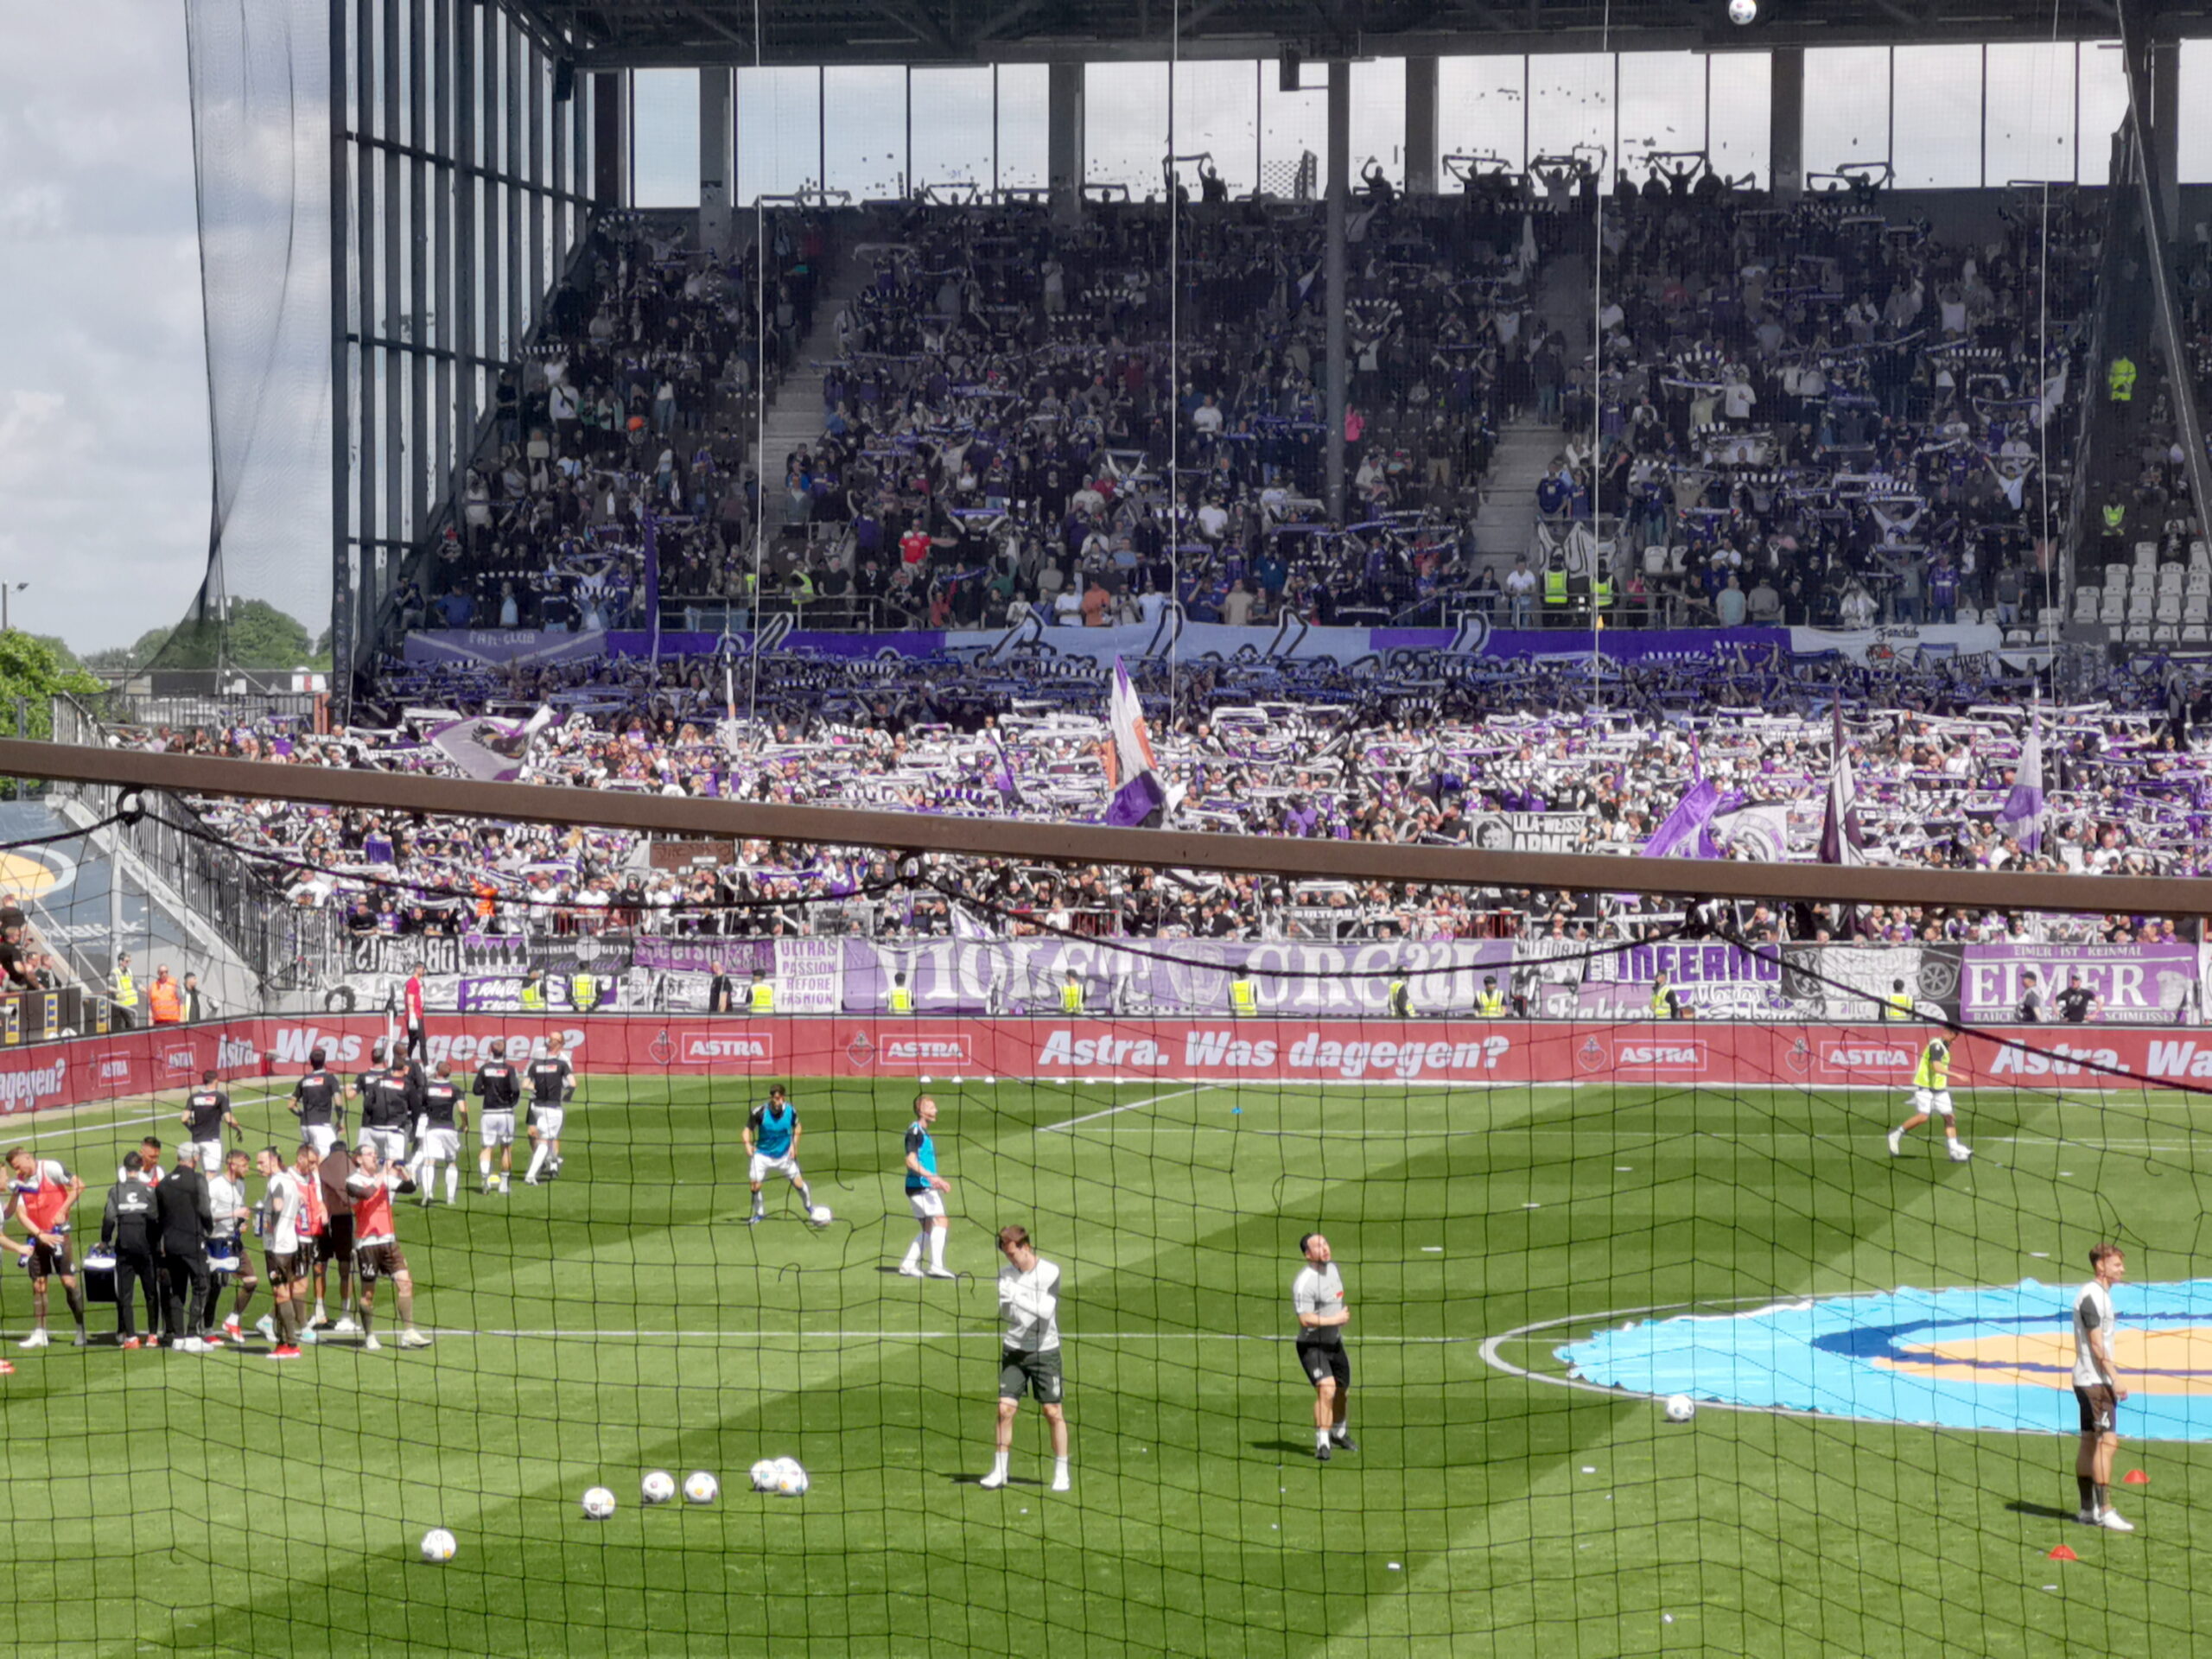 Zu sehen ist der Gästeblock im Millerntor-Stadion mit den Osnabrück-Fans. Im Vordergrund machen sich die Spieler auf dem Rasen warm